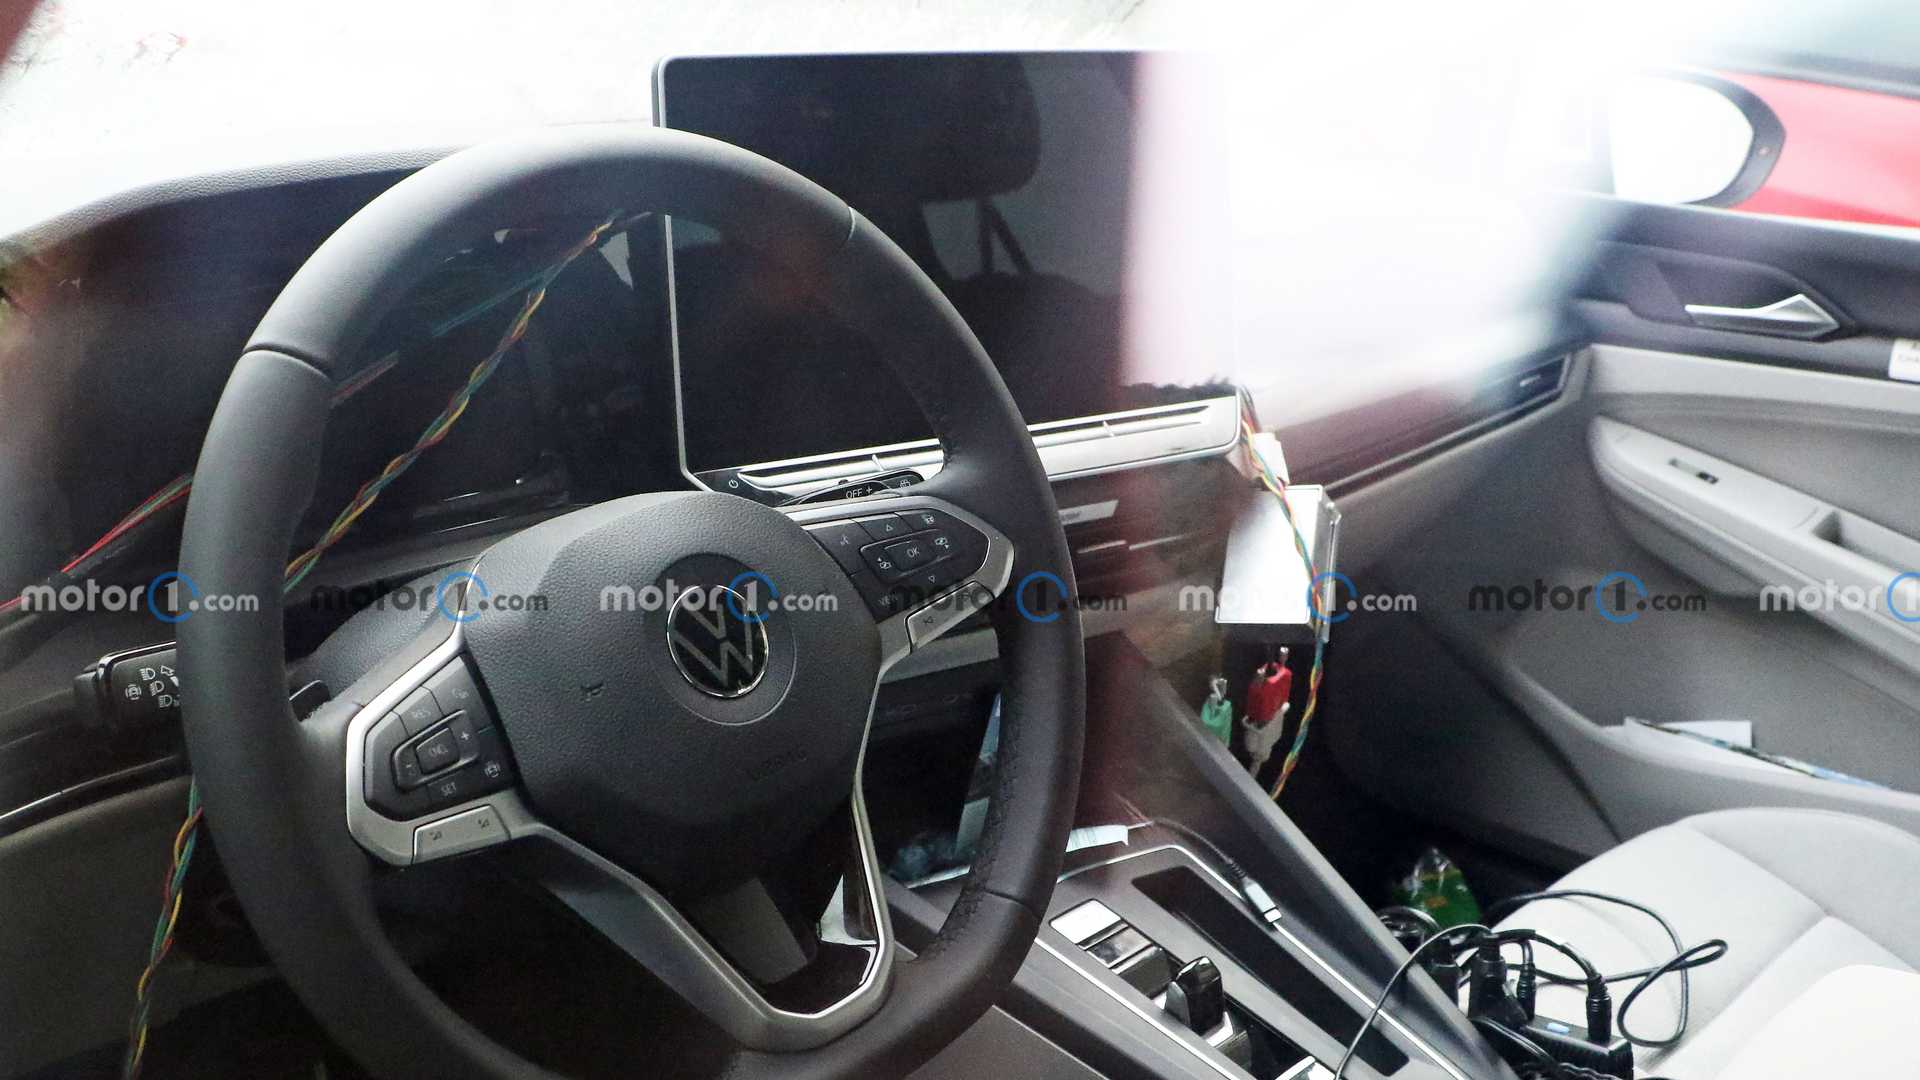 Обновленный VW Golf получит большой сенсорный дисплей